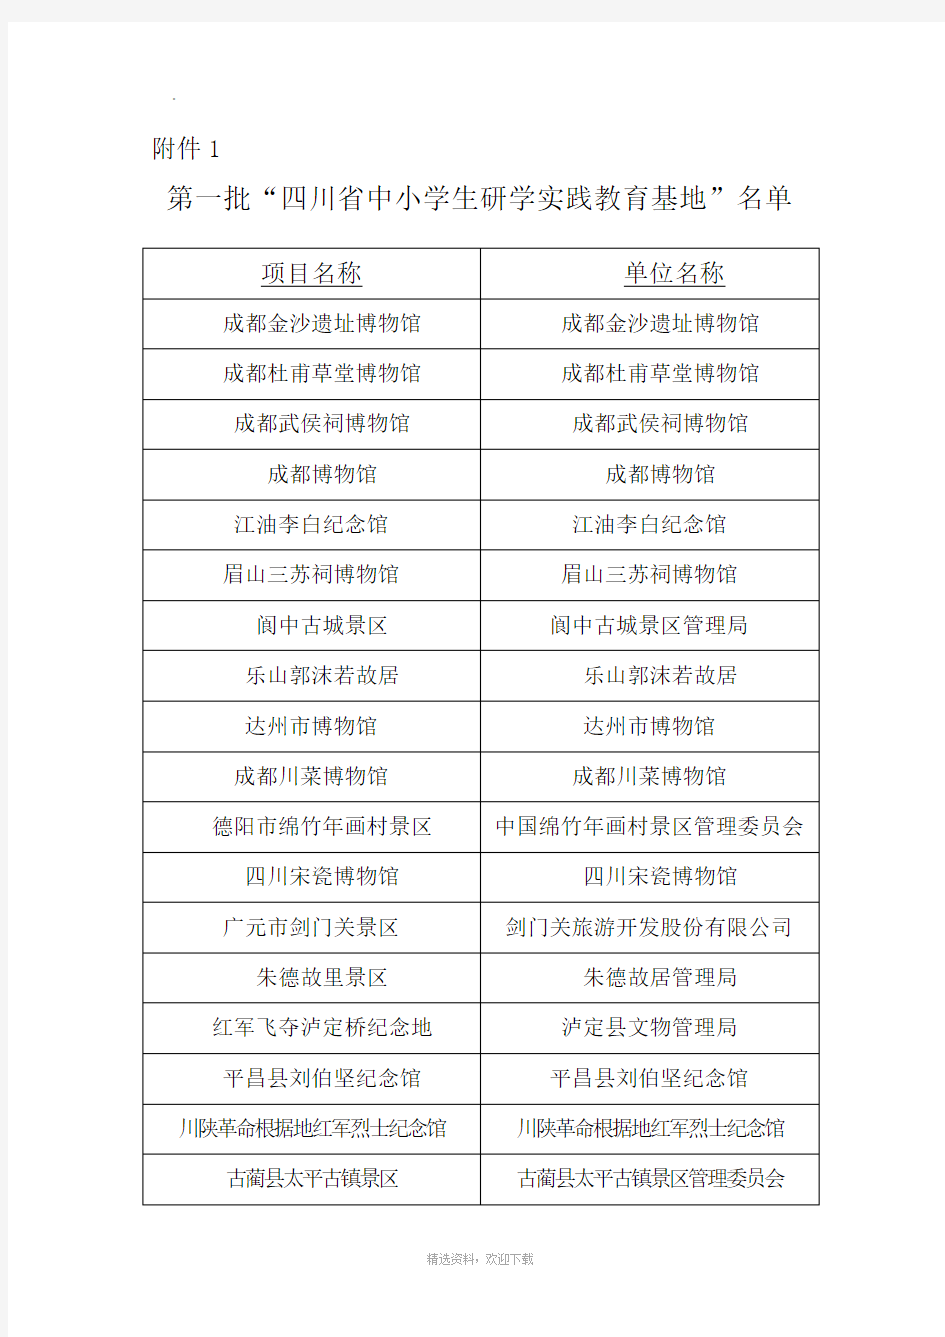 四川省中小学生研学实践教育基地名单